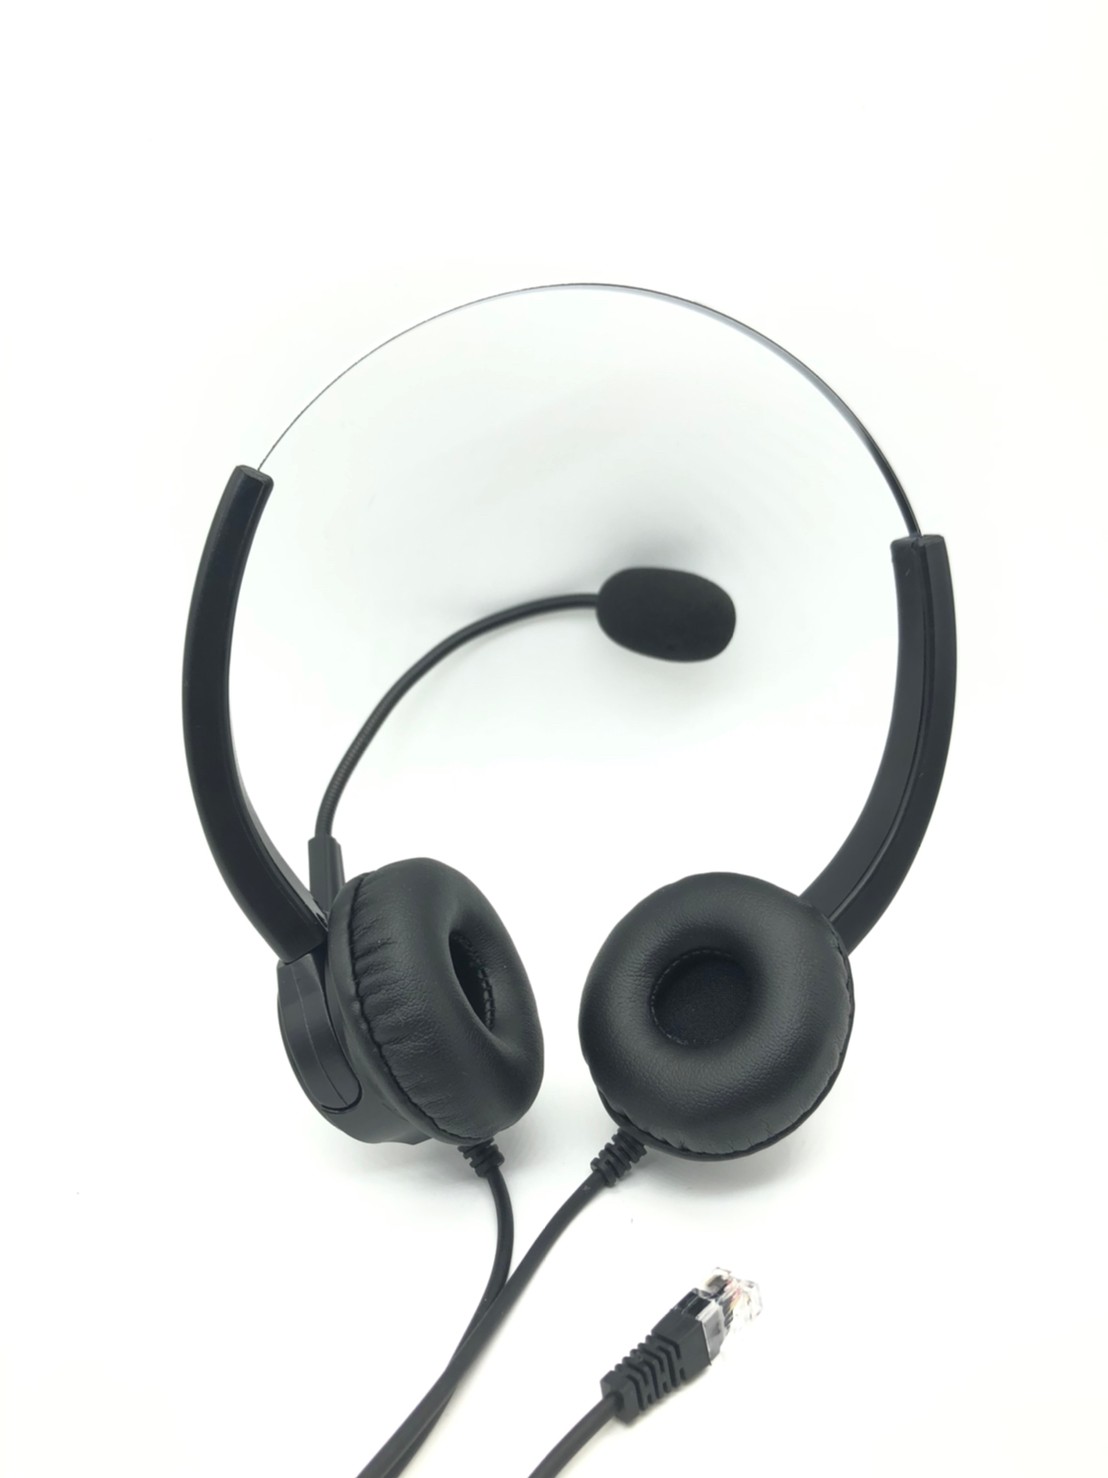 日本岩通IWATSU UX6KTD電話機專用頭戴式電話耳機麥克風 雙耳1100元 水晶頭電話耳機麥克風